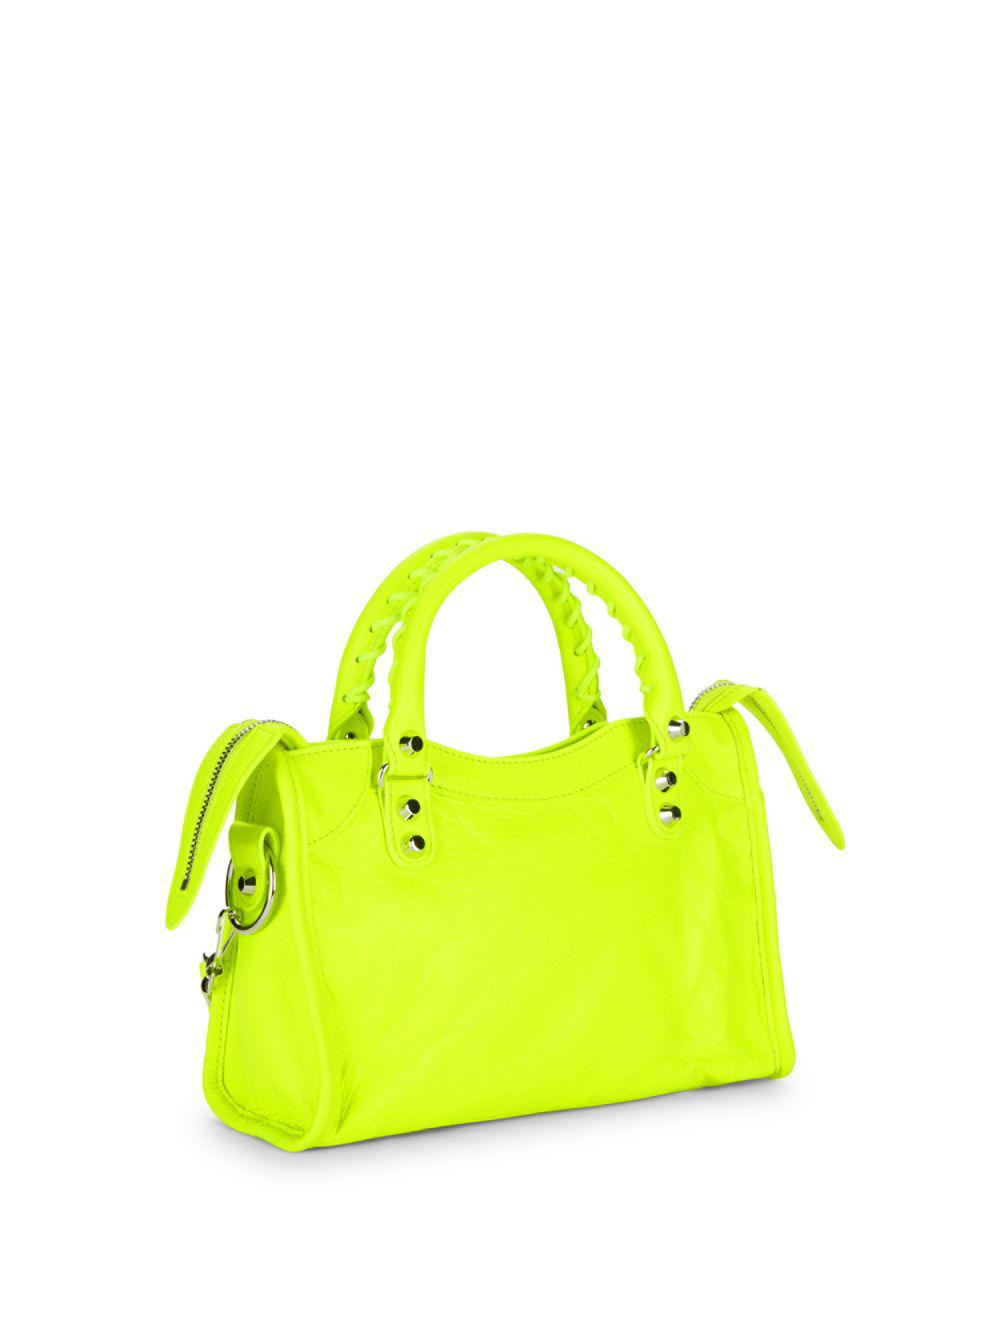 Balenciaga Neon Leather Bag in Neon Green (Yellow) | Lyst